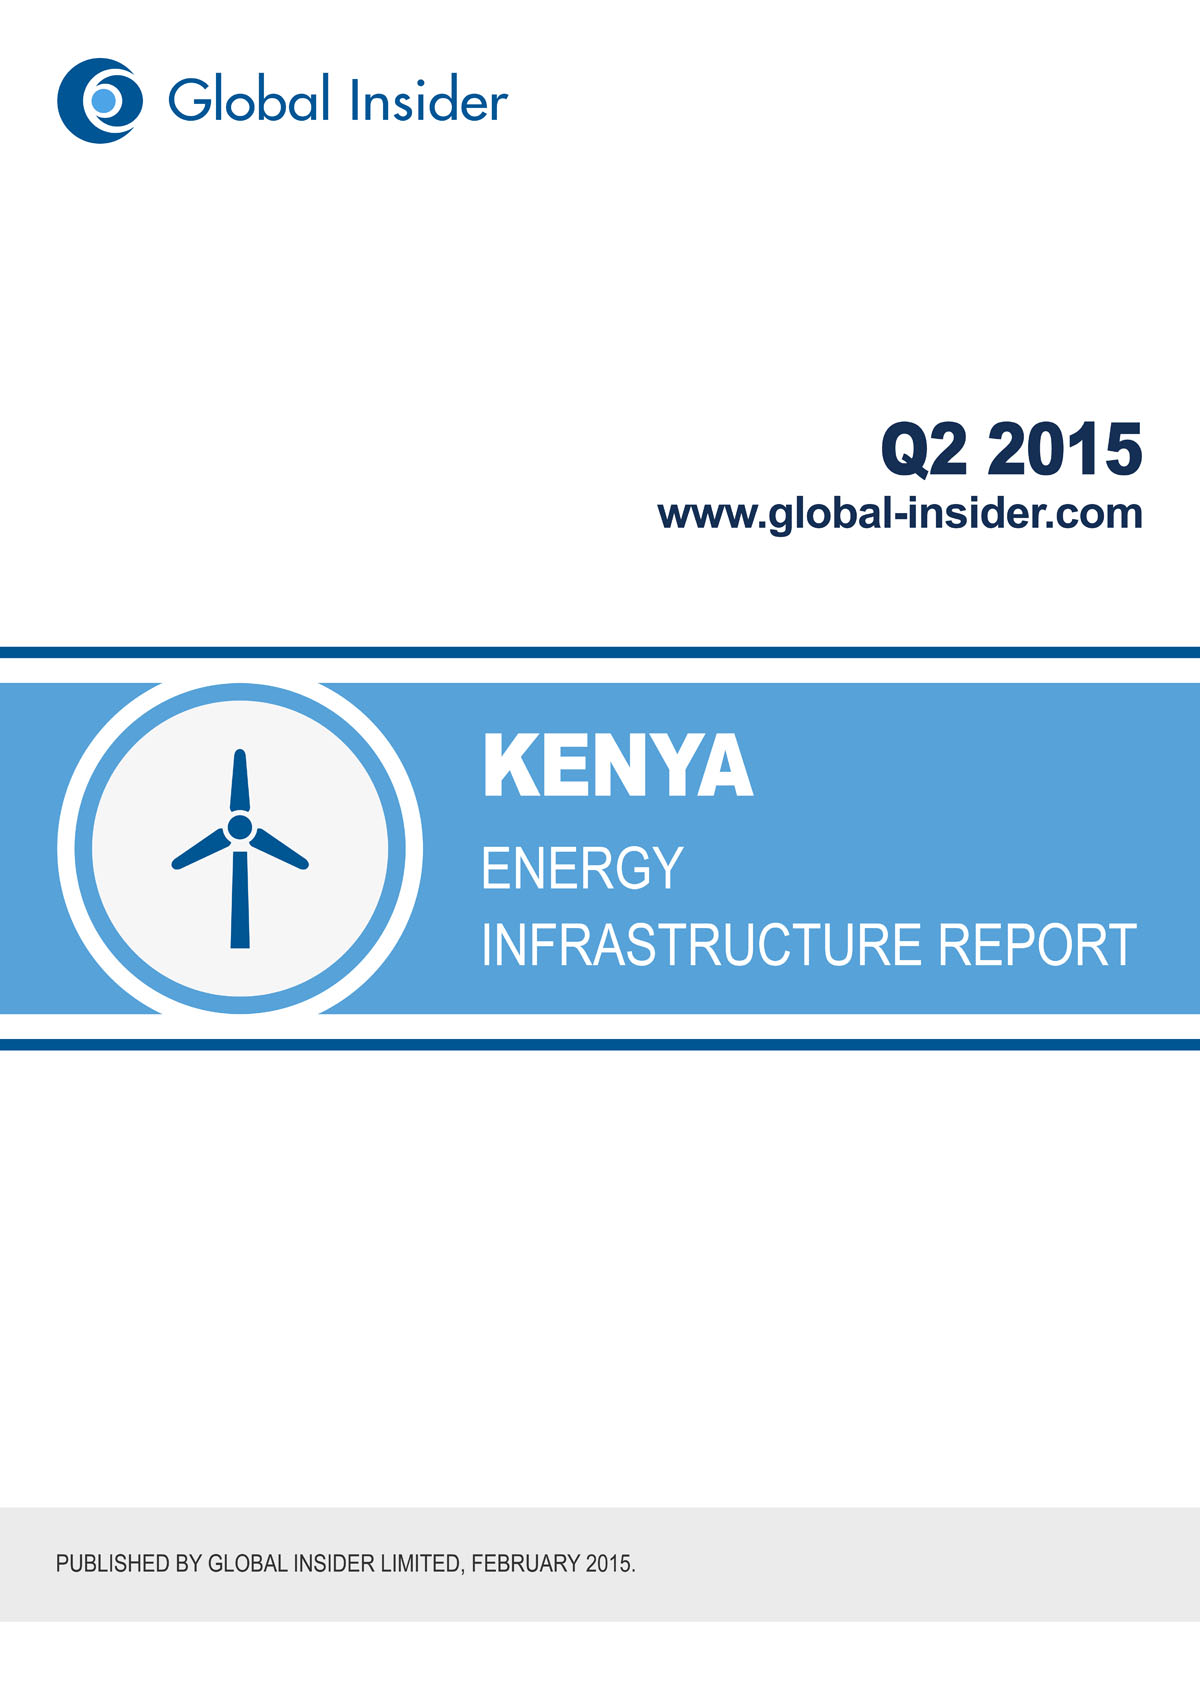 Kenya Energy Infrastructure Report